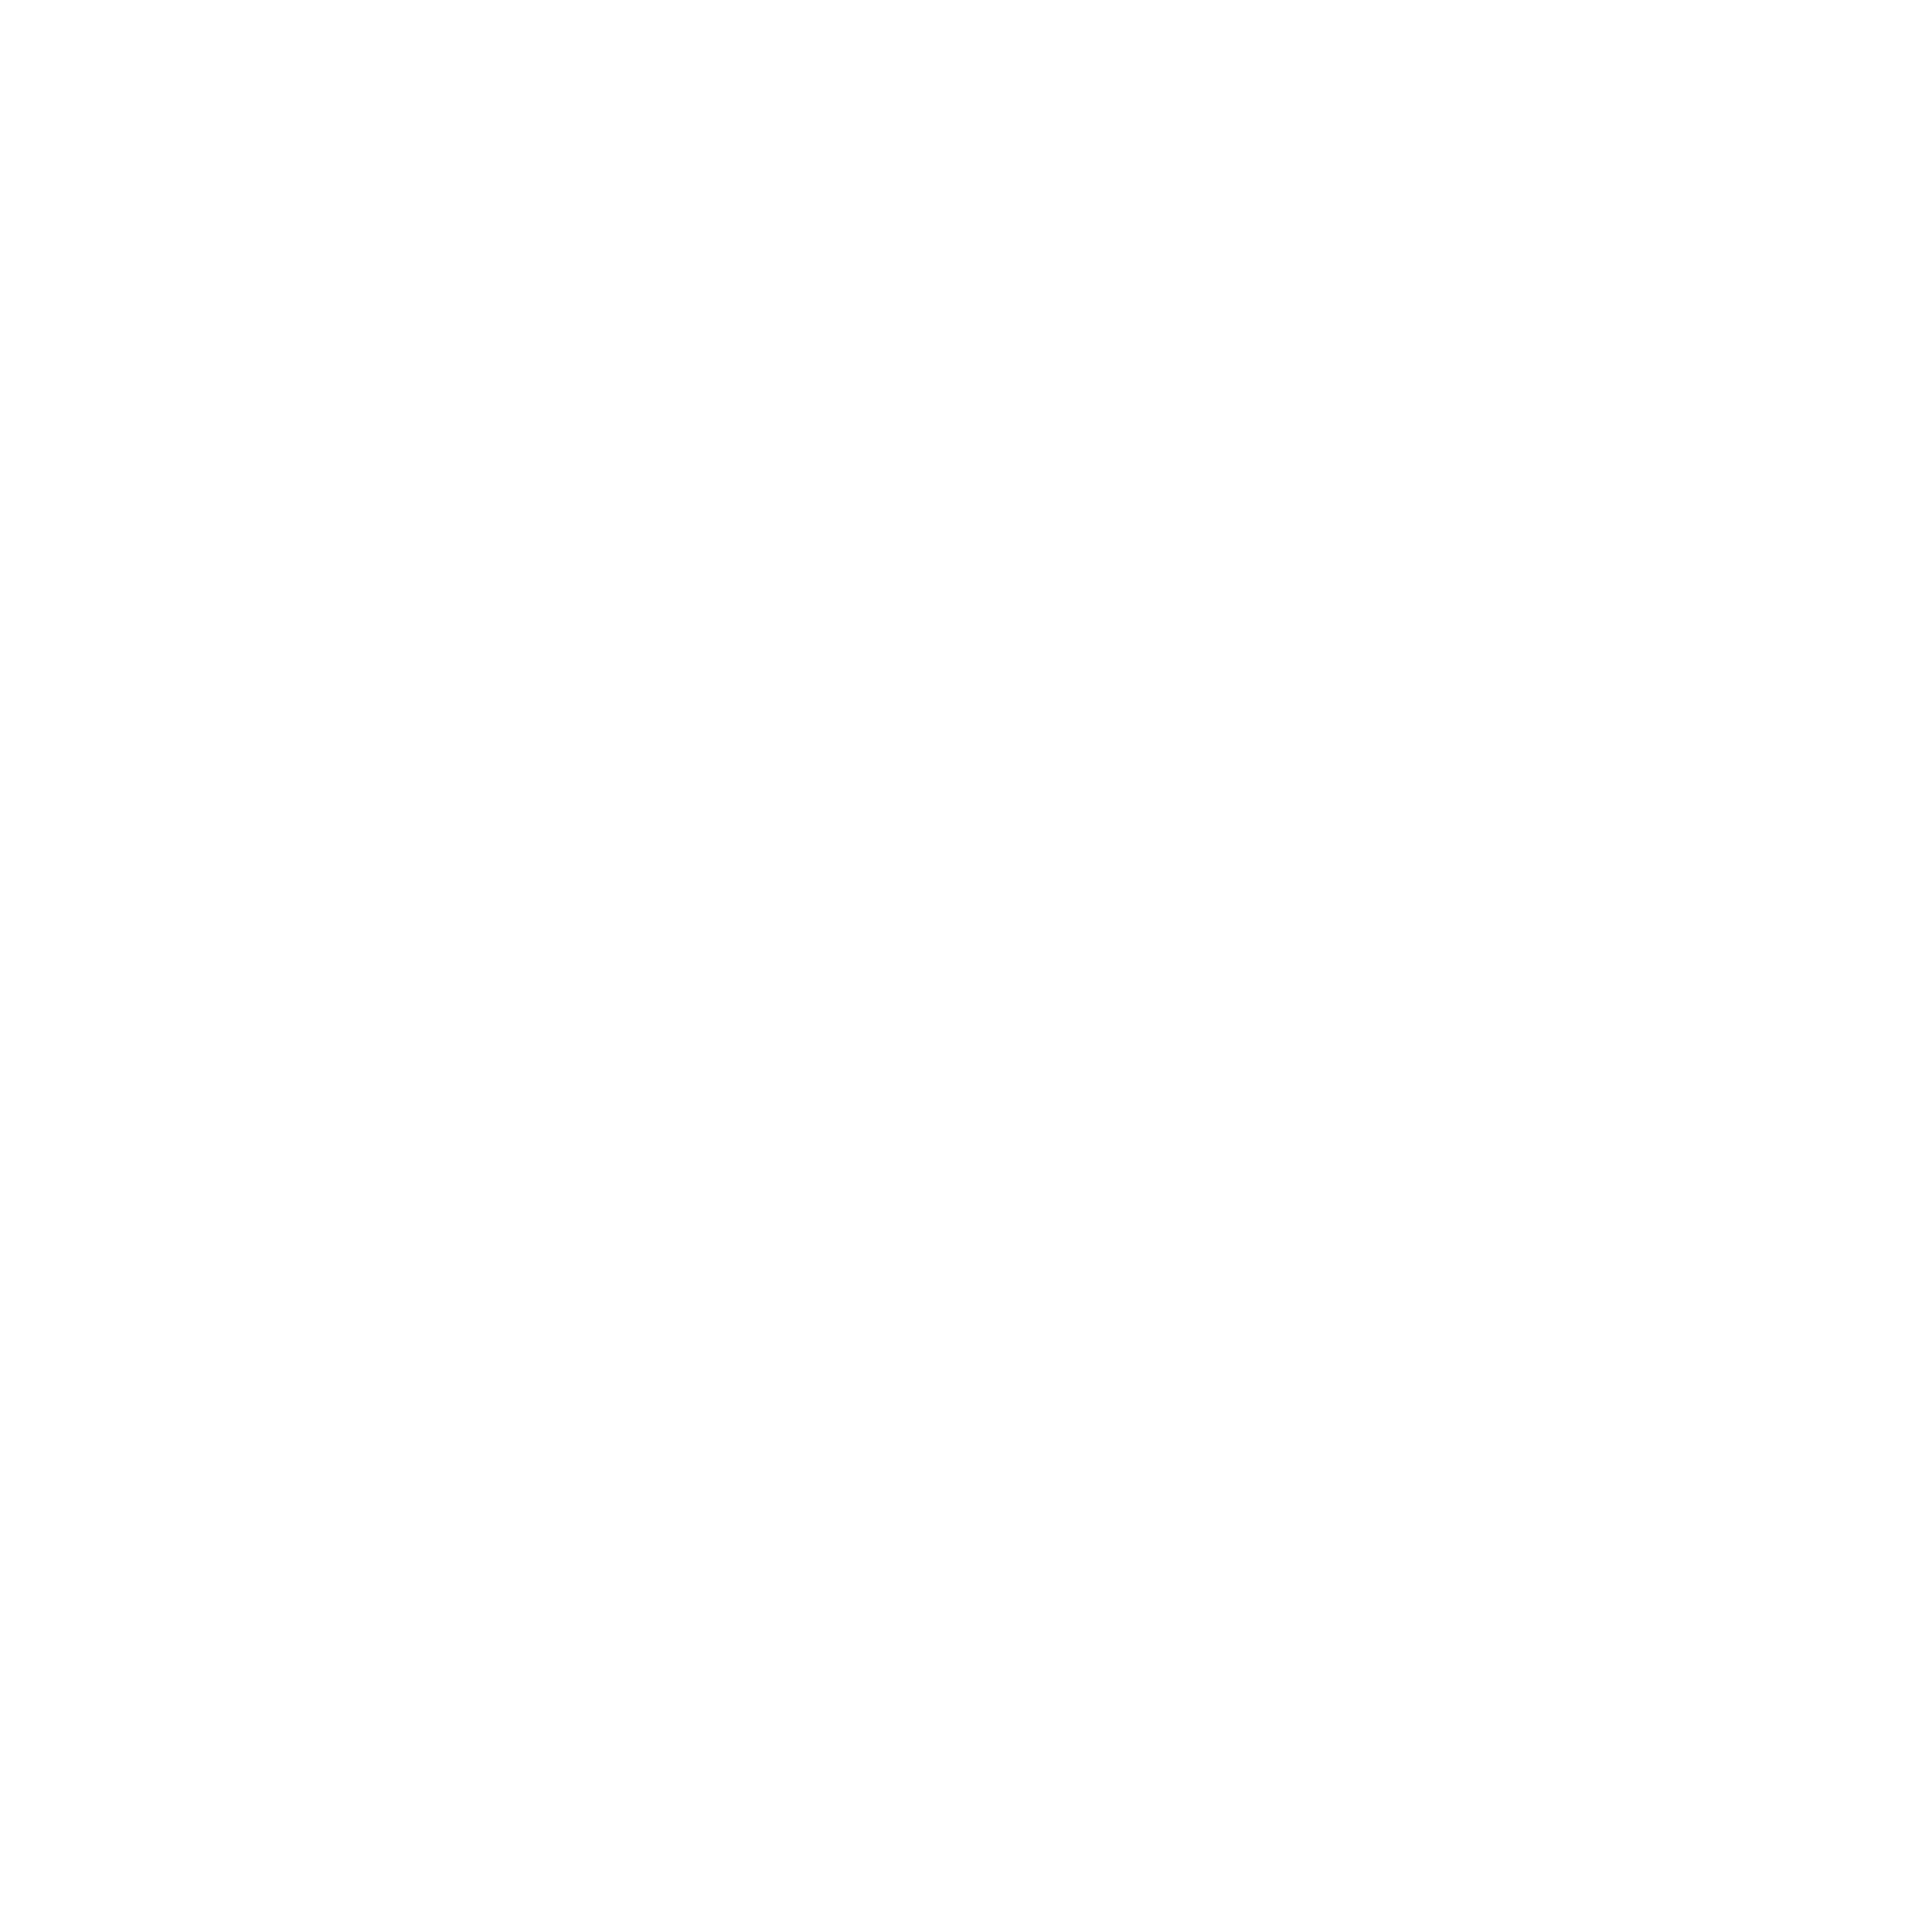 A logo for Digital Umbilical